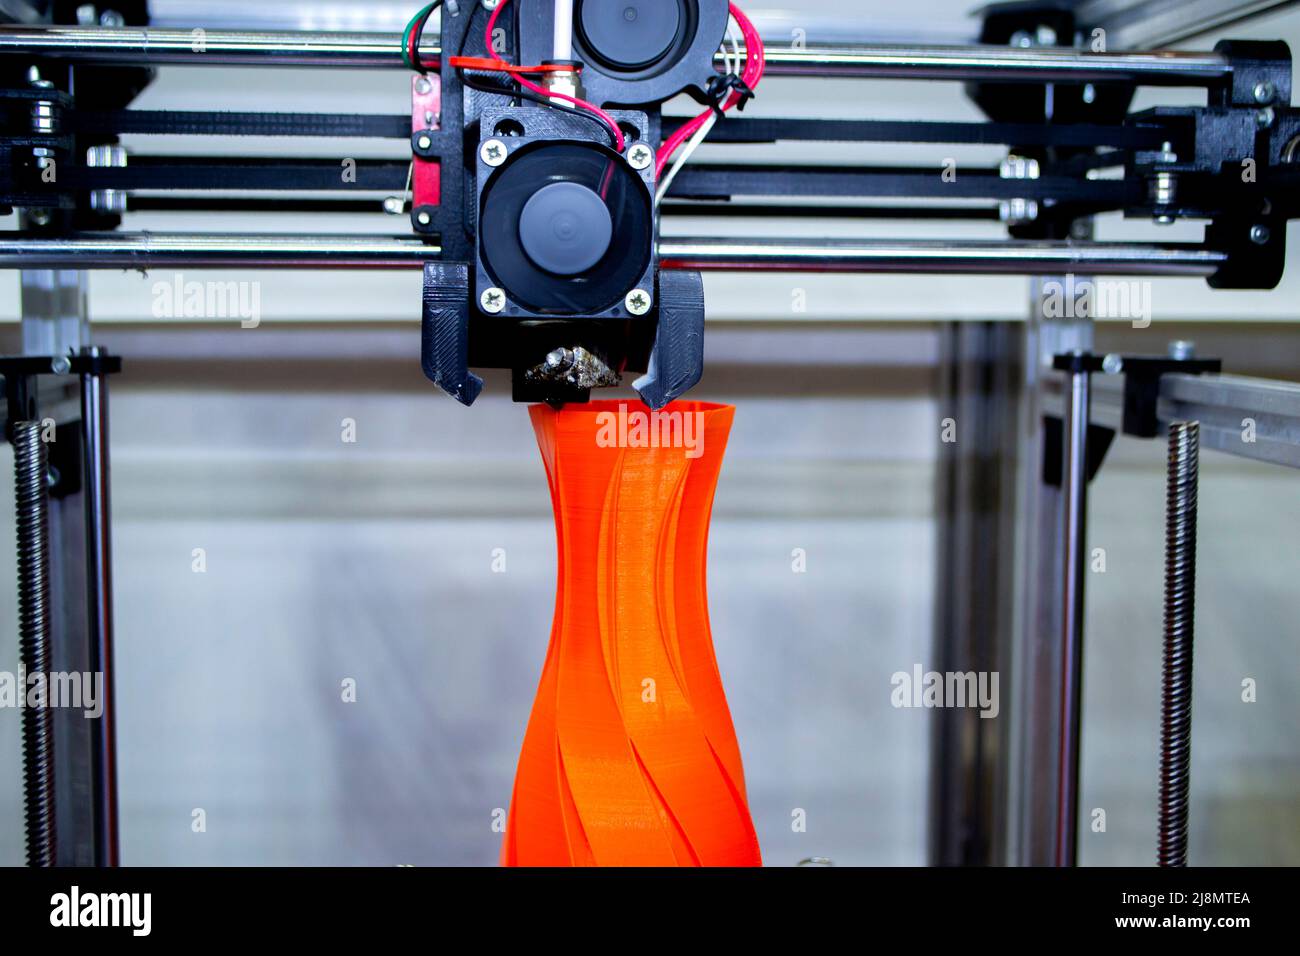 Elaborare il modello di stampa sulla stampante 3D. Computer con stampante digitale high-tech Foto Stock